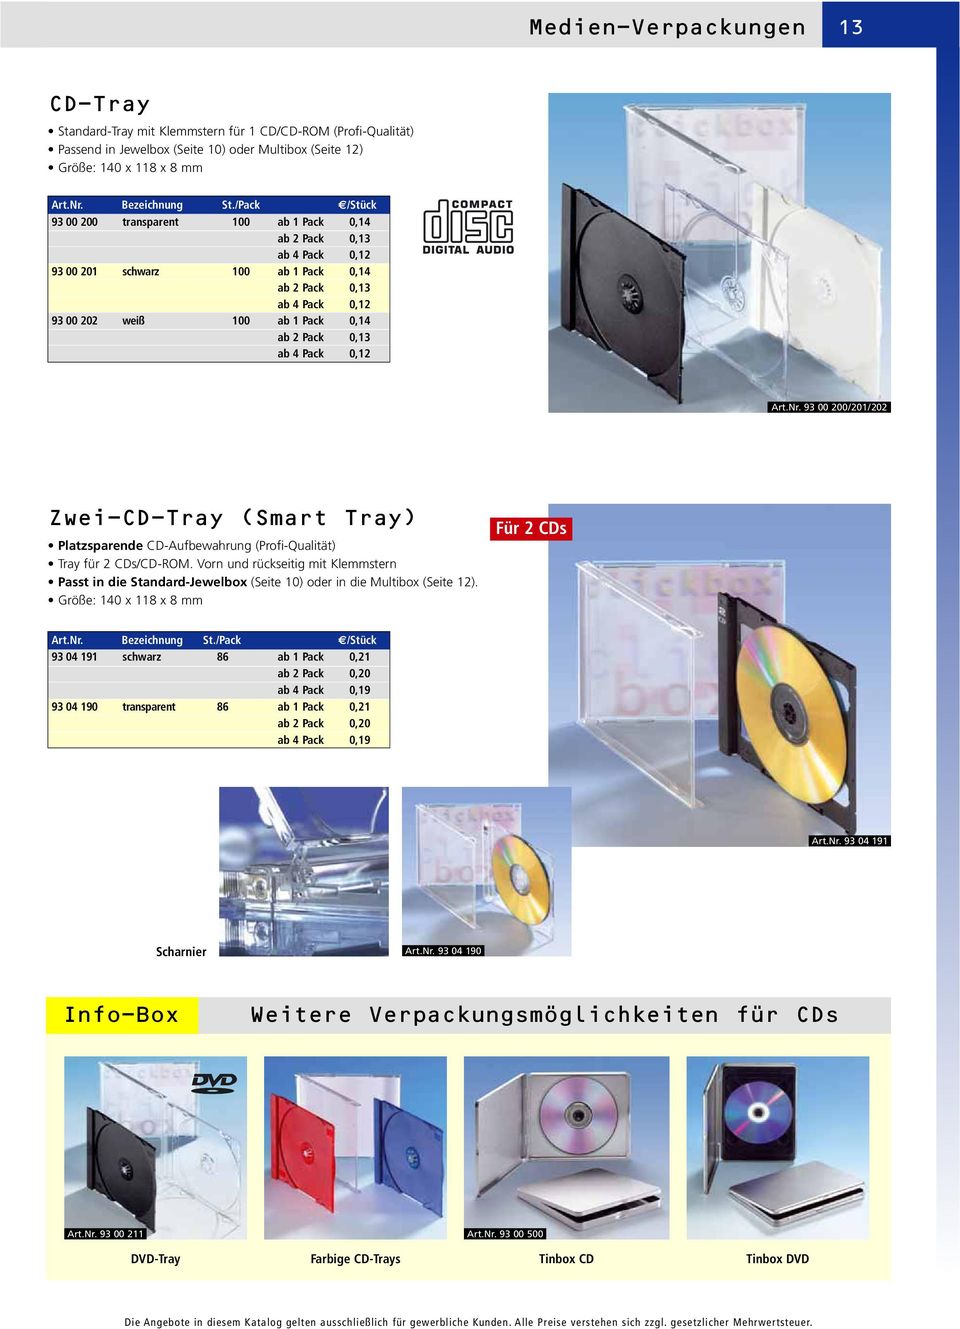 ab 4 Pack 0,12 Art.Nr. 93 00 200/201/202 Zwei-CD-Tray (Smart Tray) Platzsparende CD-Aufbewahrung (Profi-Qualität) Tray für 2 CDs/CD-ROM.